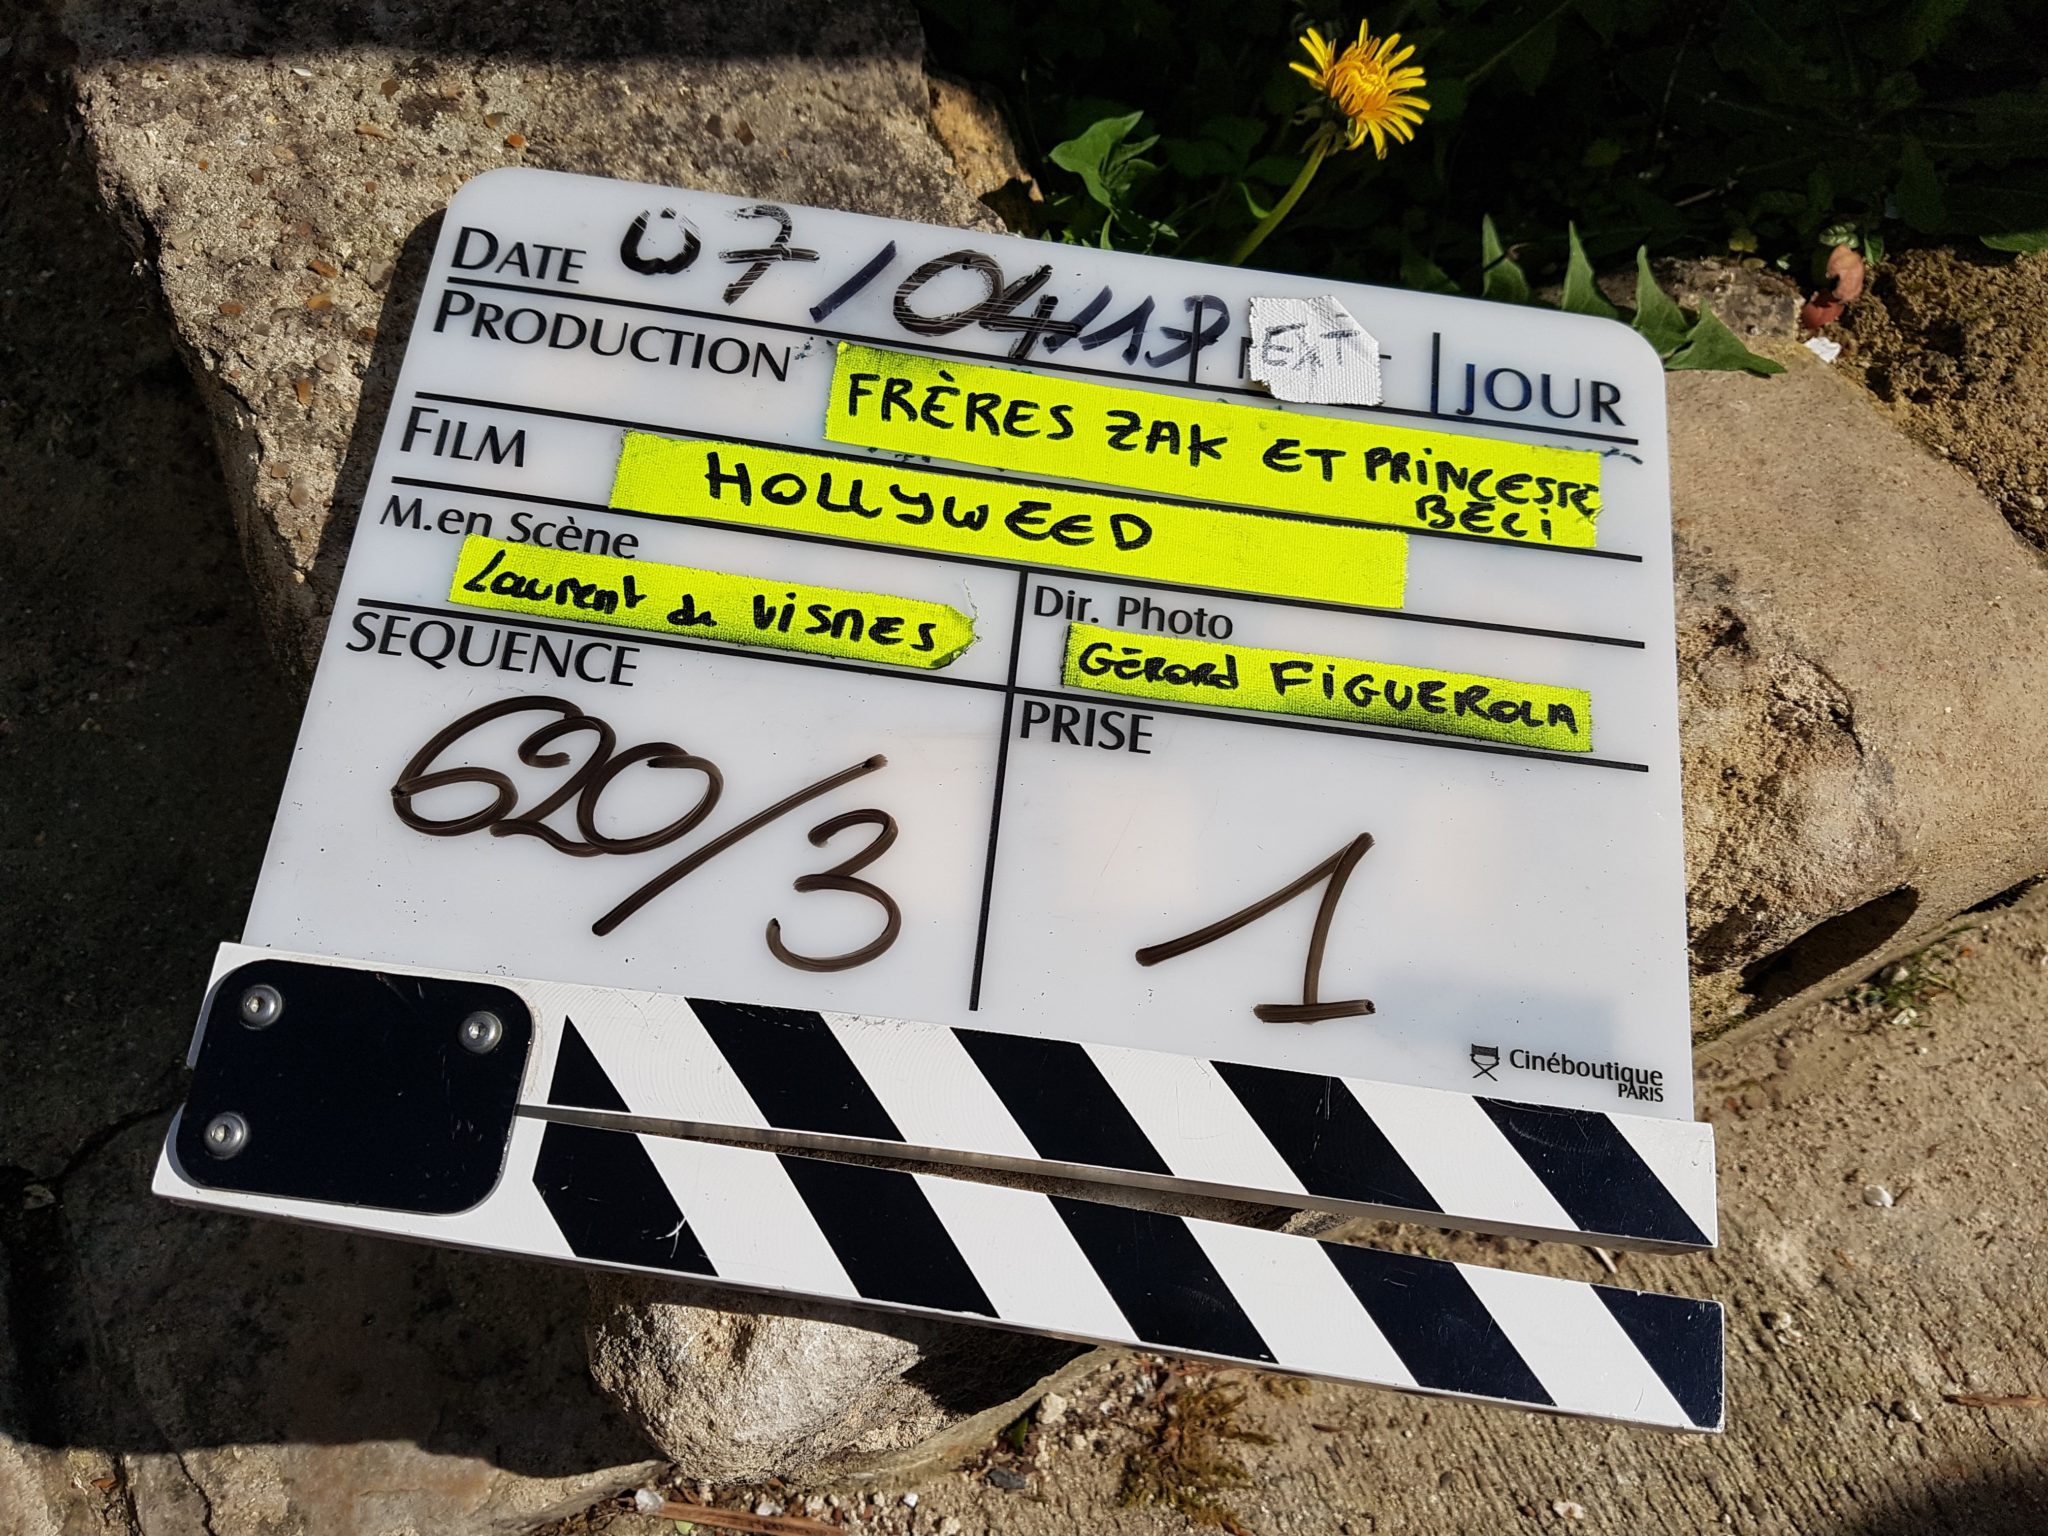 Holly Weed saison 1 tournage image 01